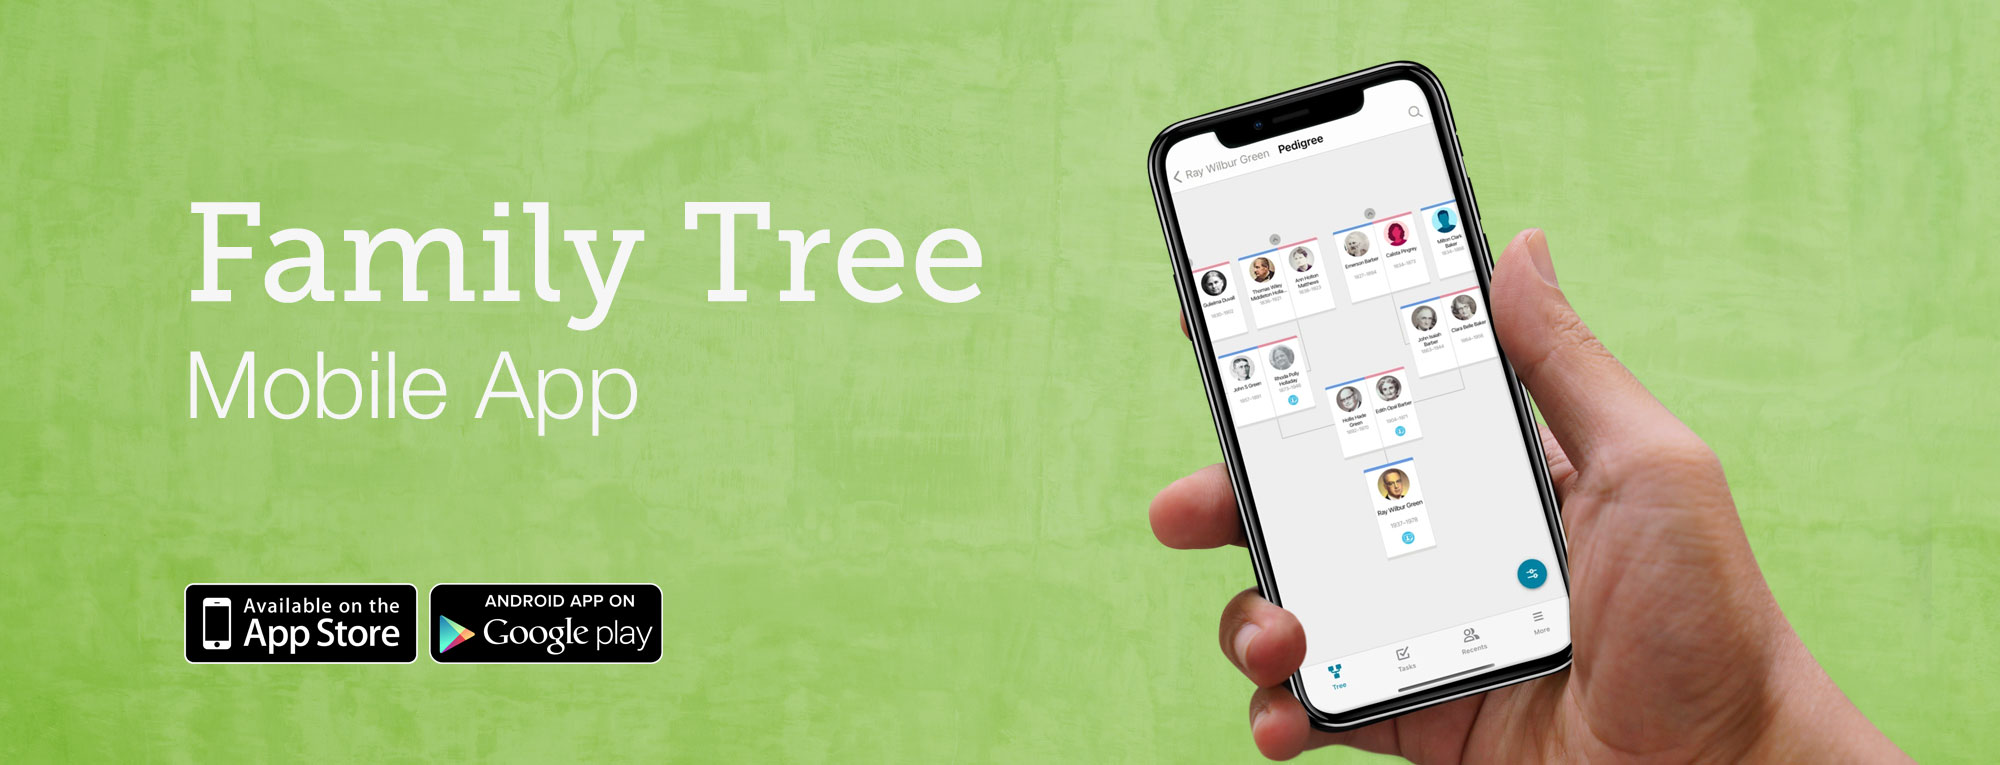 Family Tree Mobile App